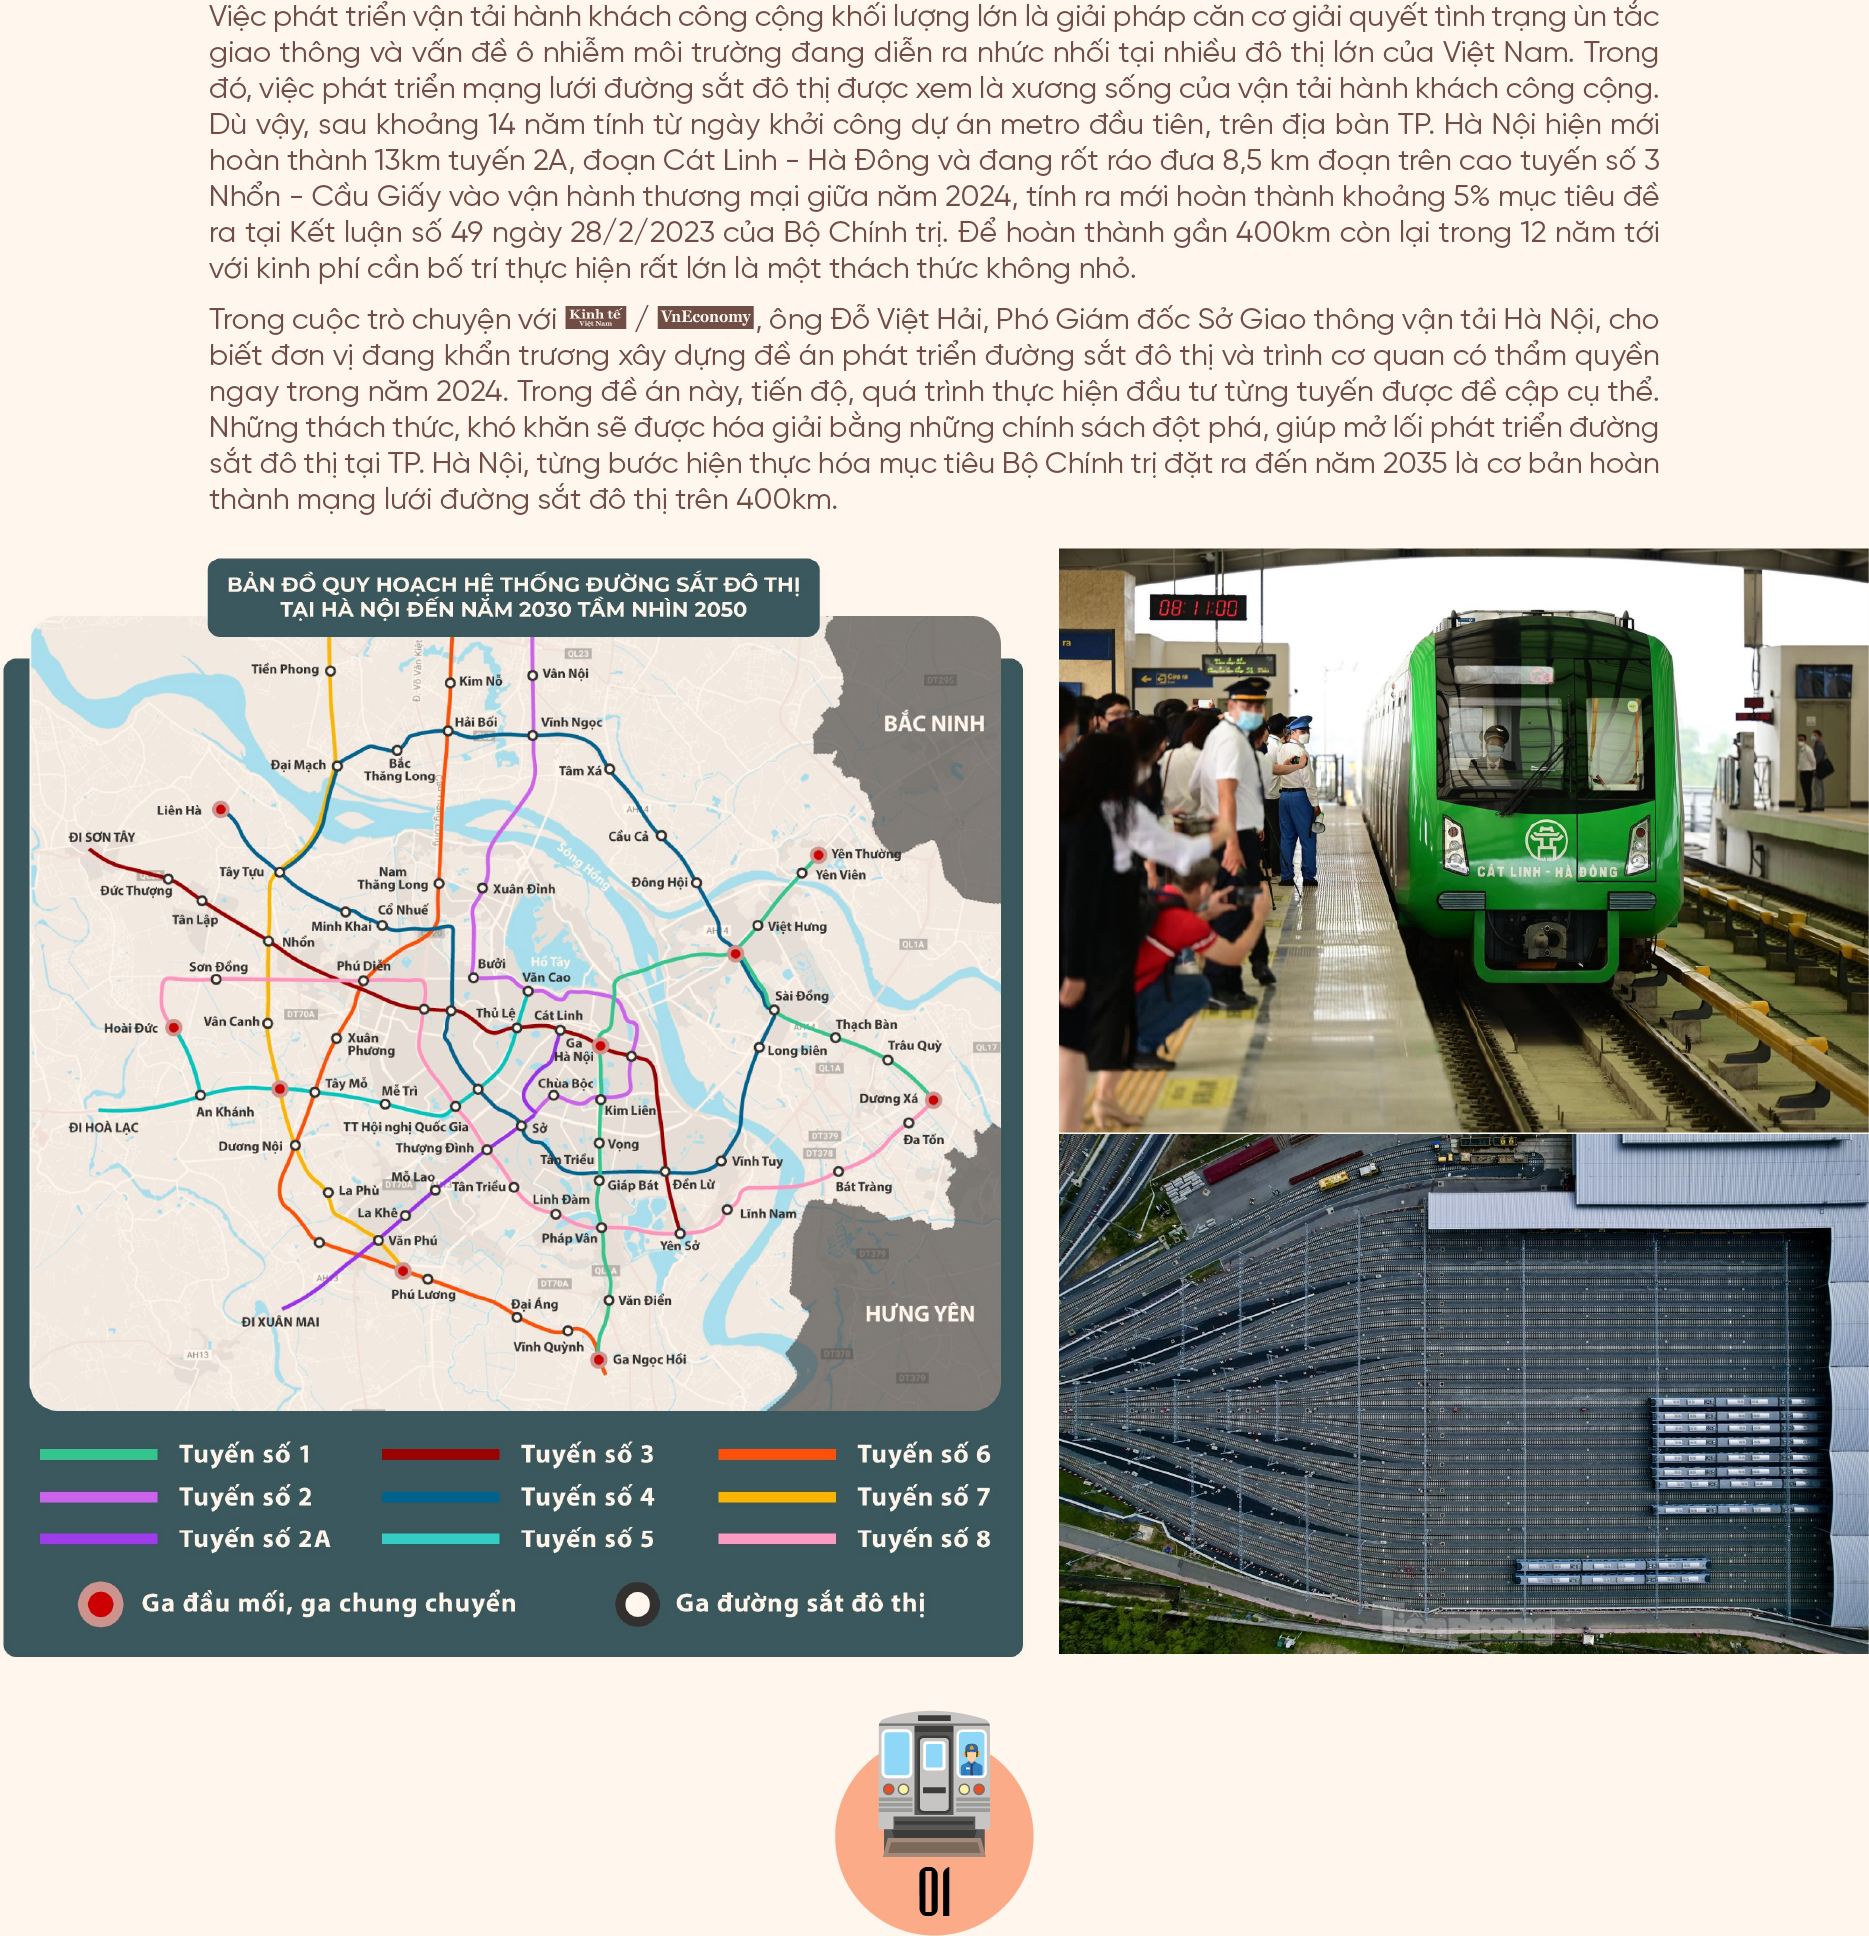 Hà Nội rộng mở lối đi cho đường sắt đô thị  - Ảnh 2